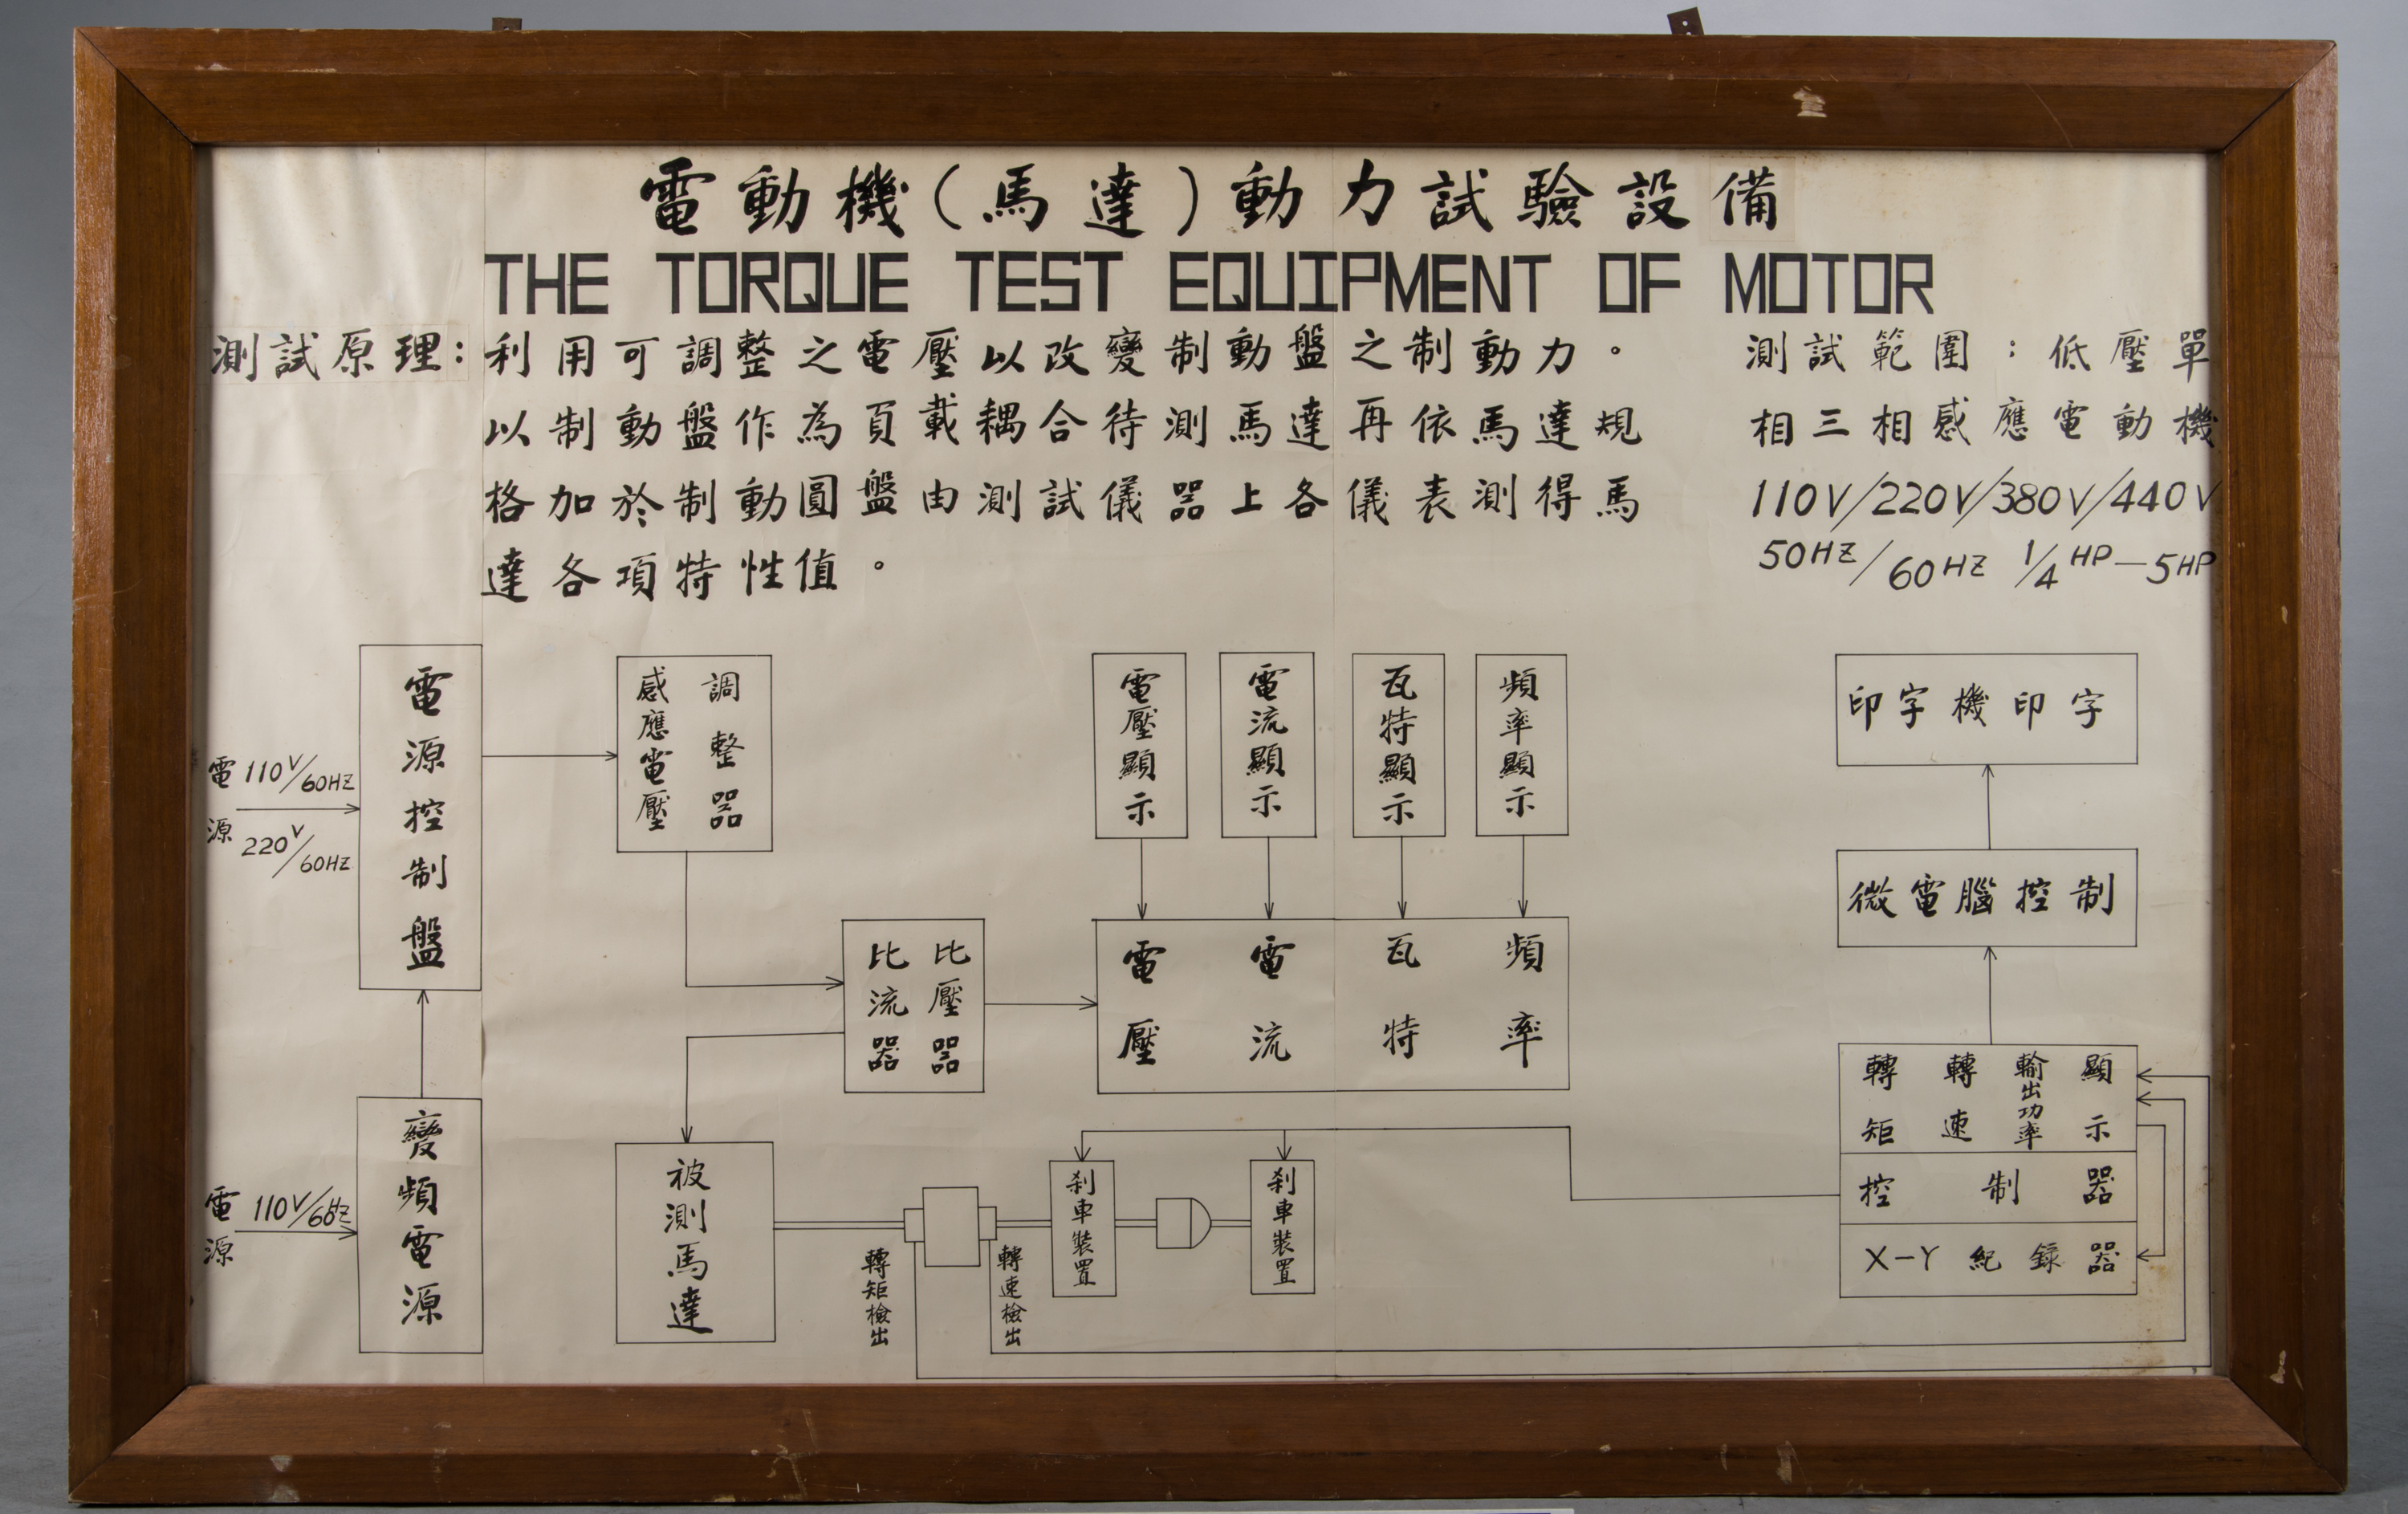 電動機動力測試設備展示板,共2張圖片